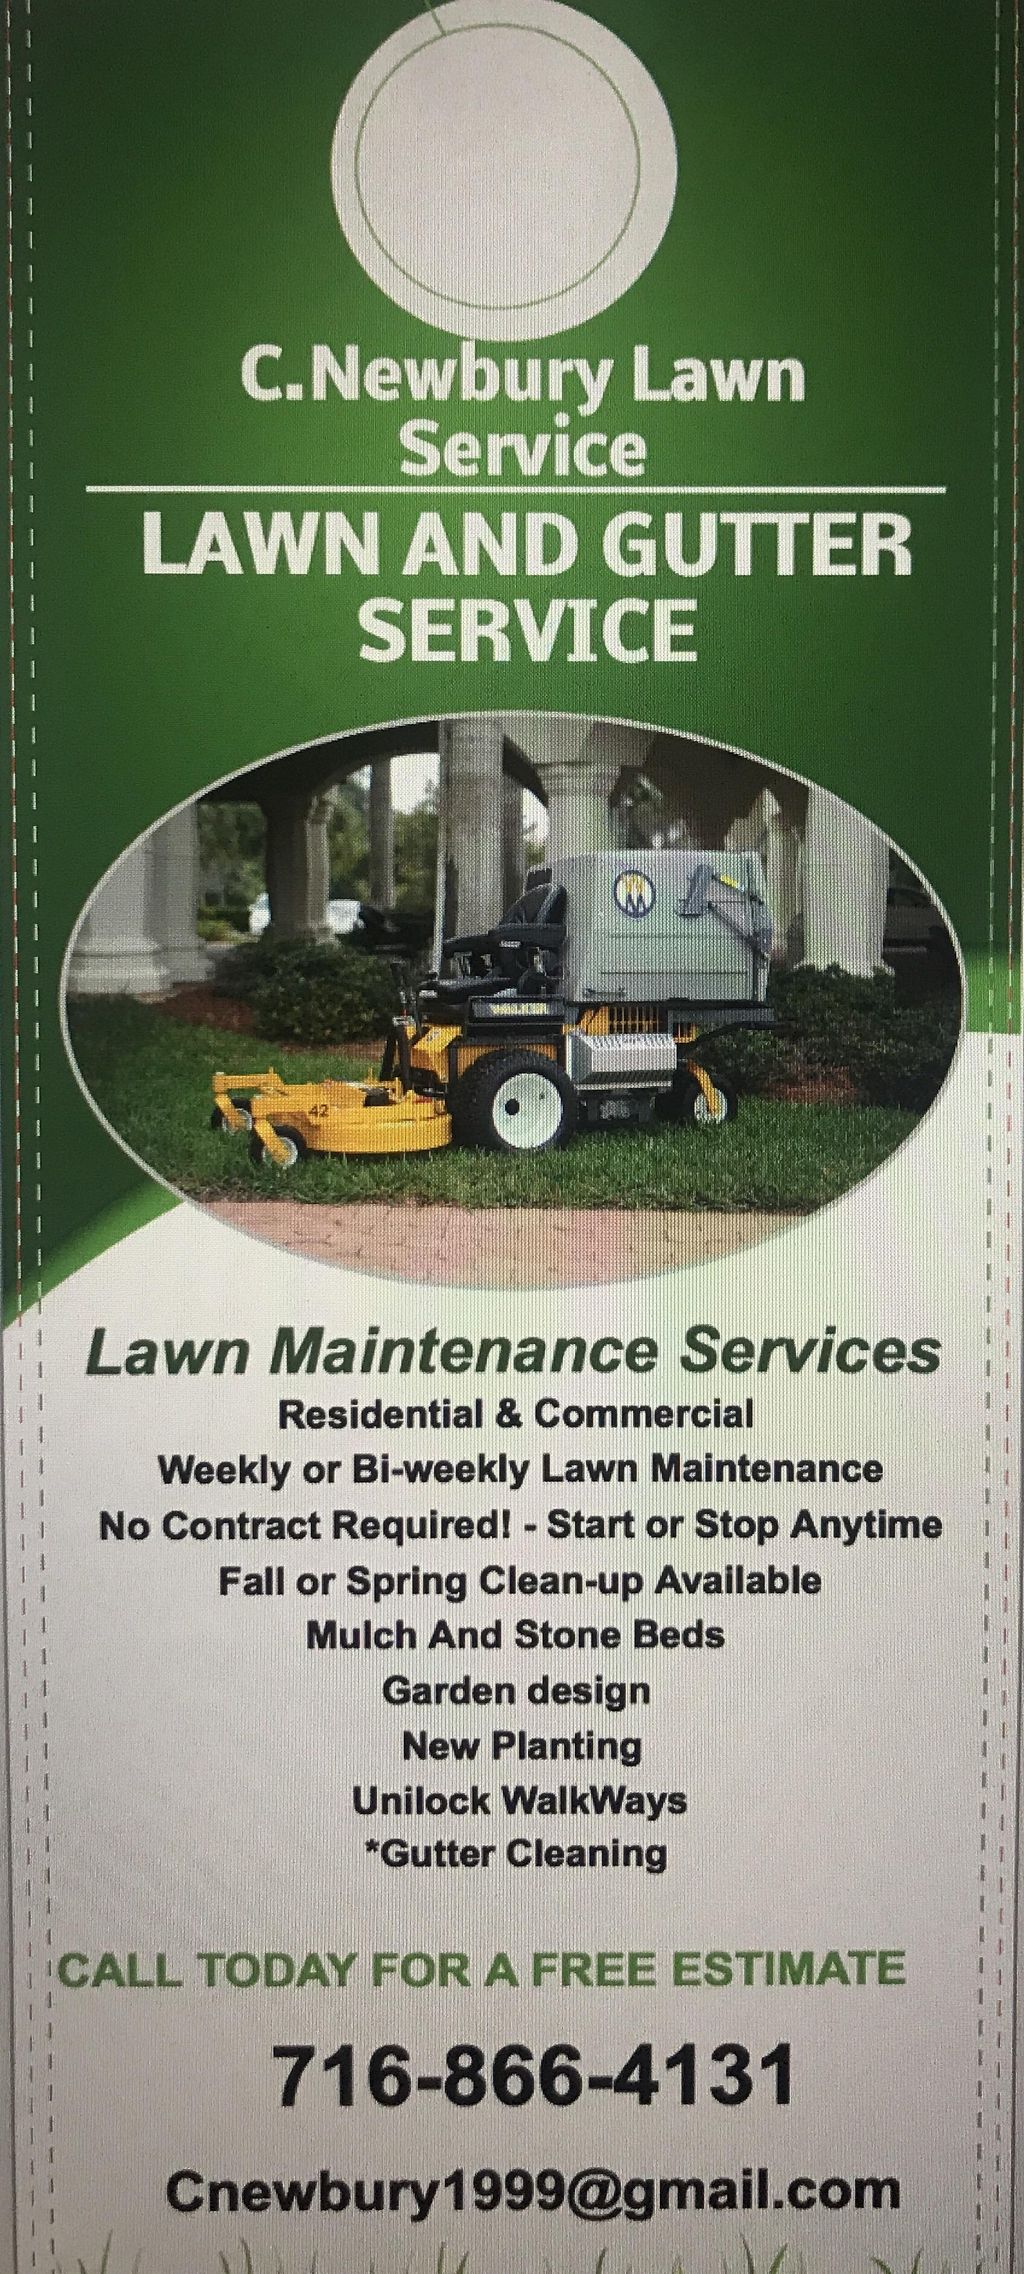 C&D Lawn service